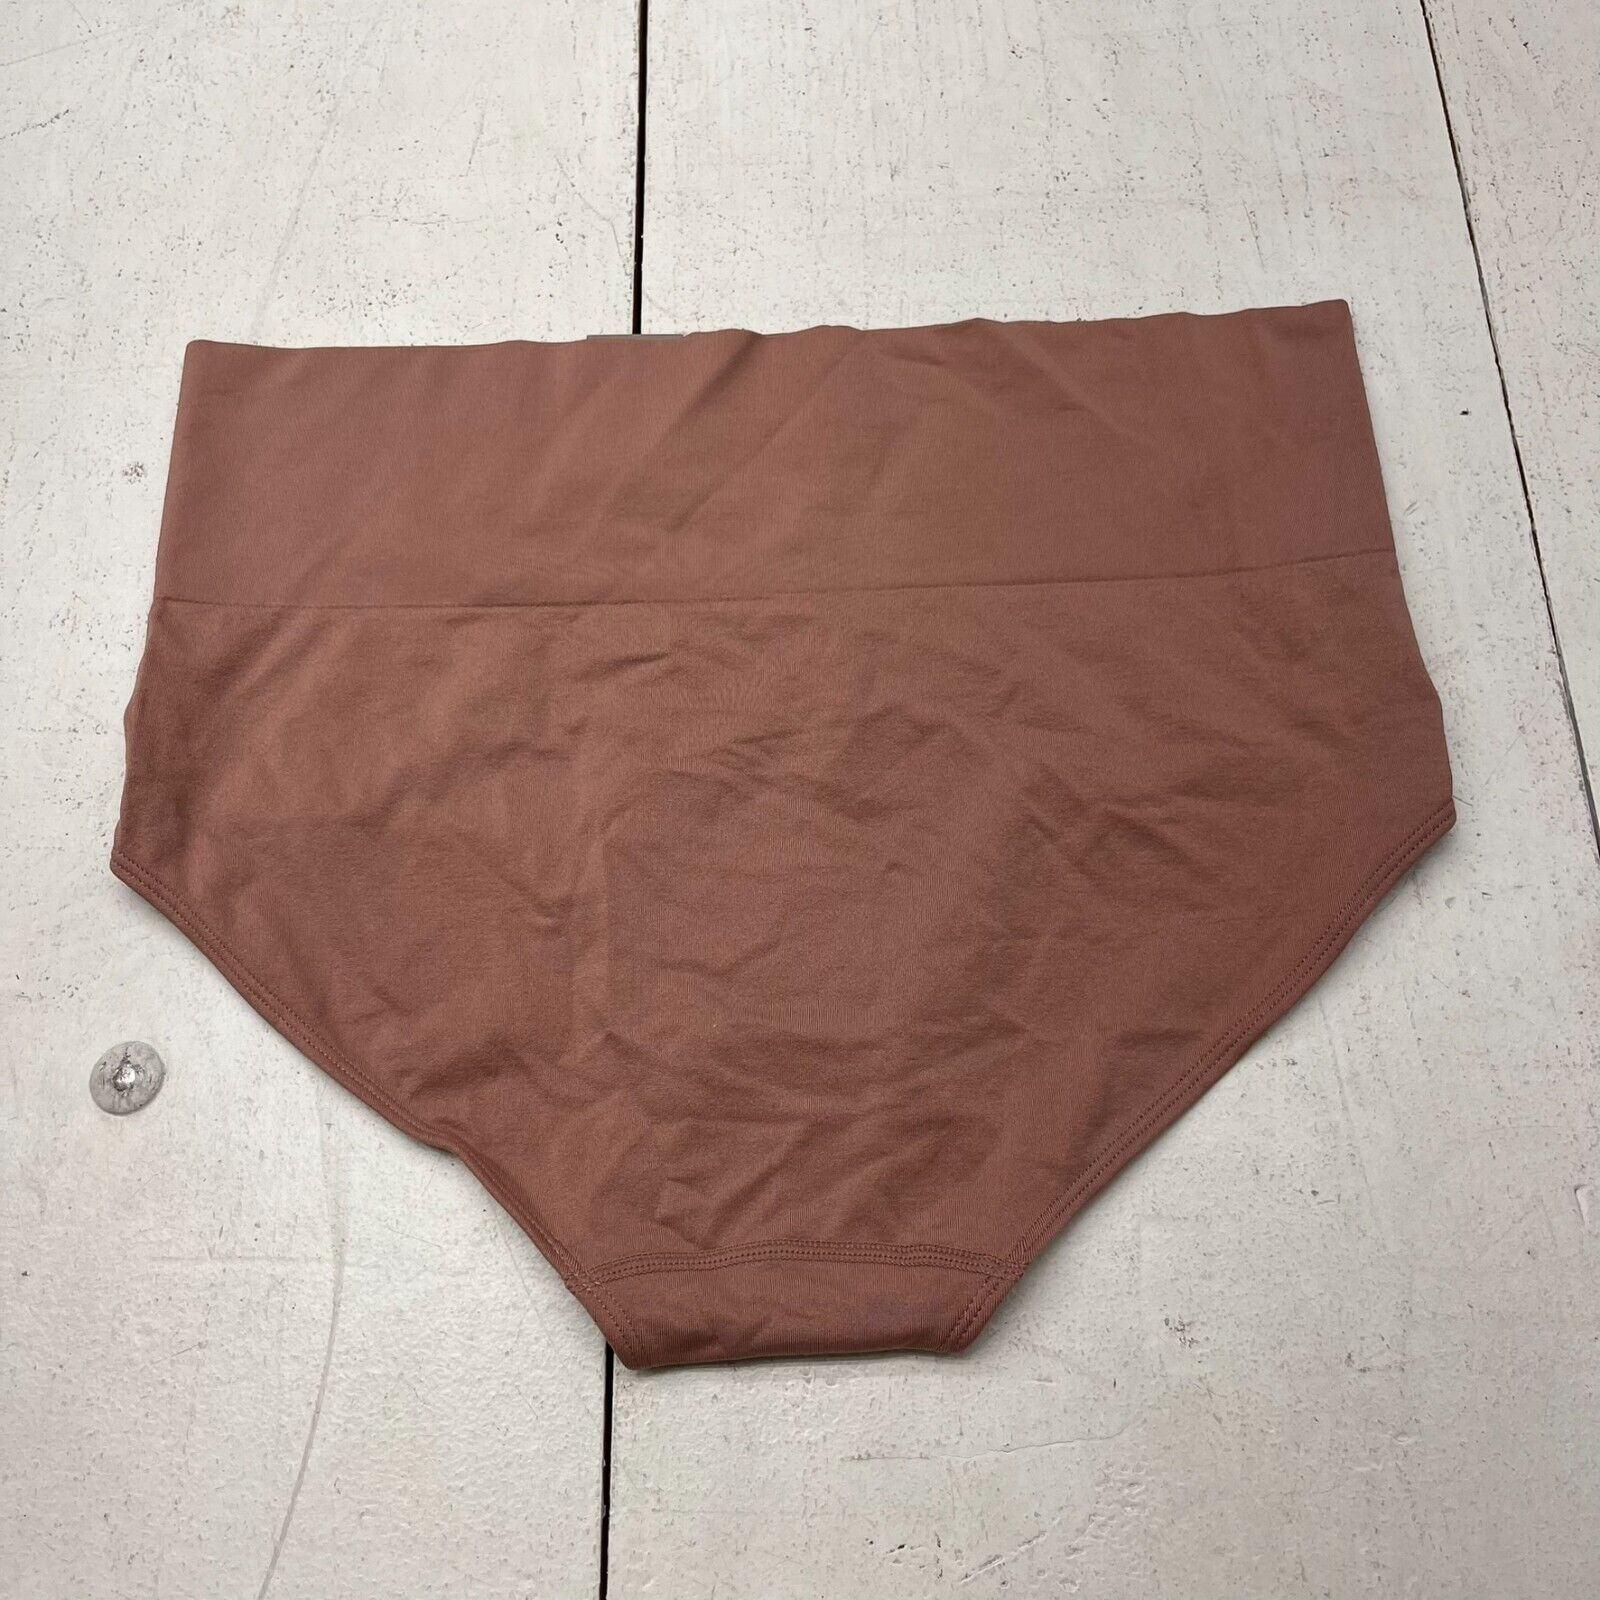 Auden Rust Seamless Brief Underwear Women's Size 1X NEW - beyond